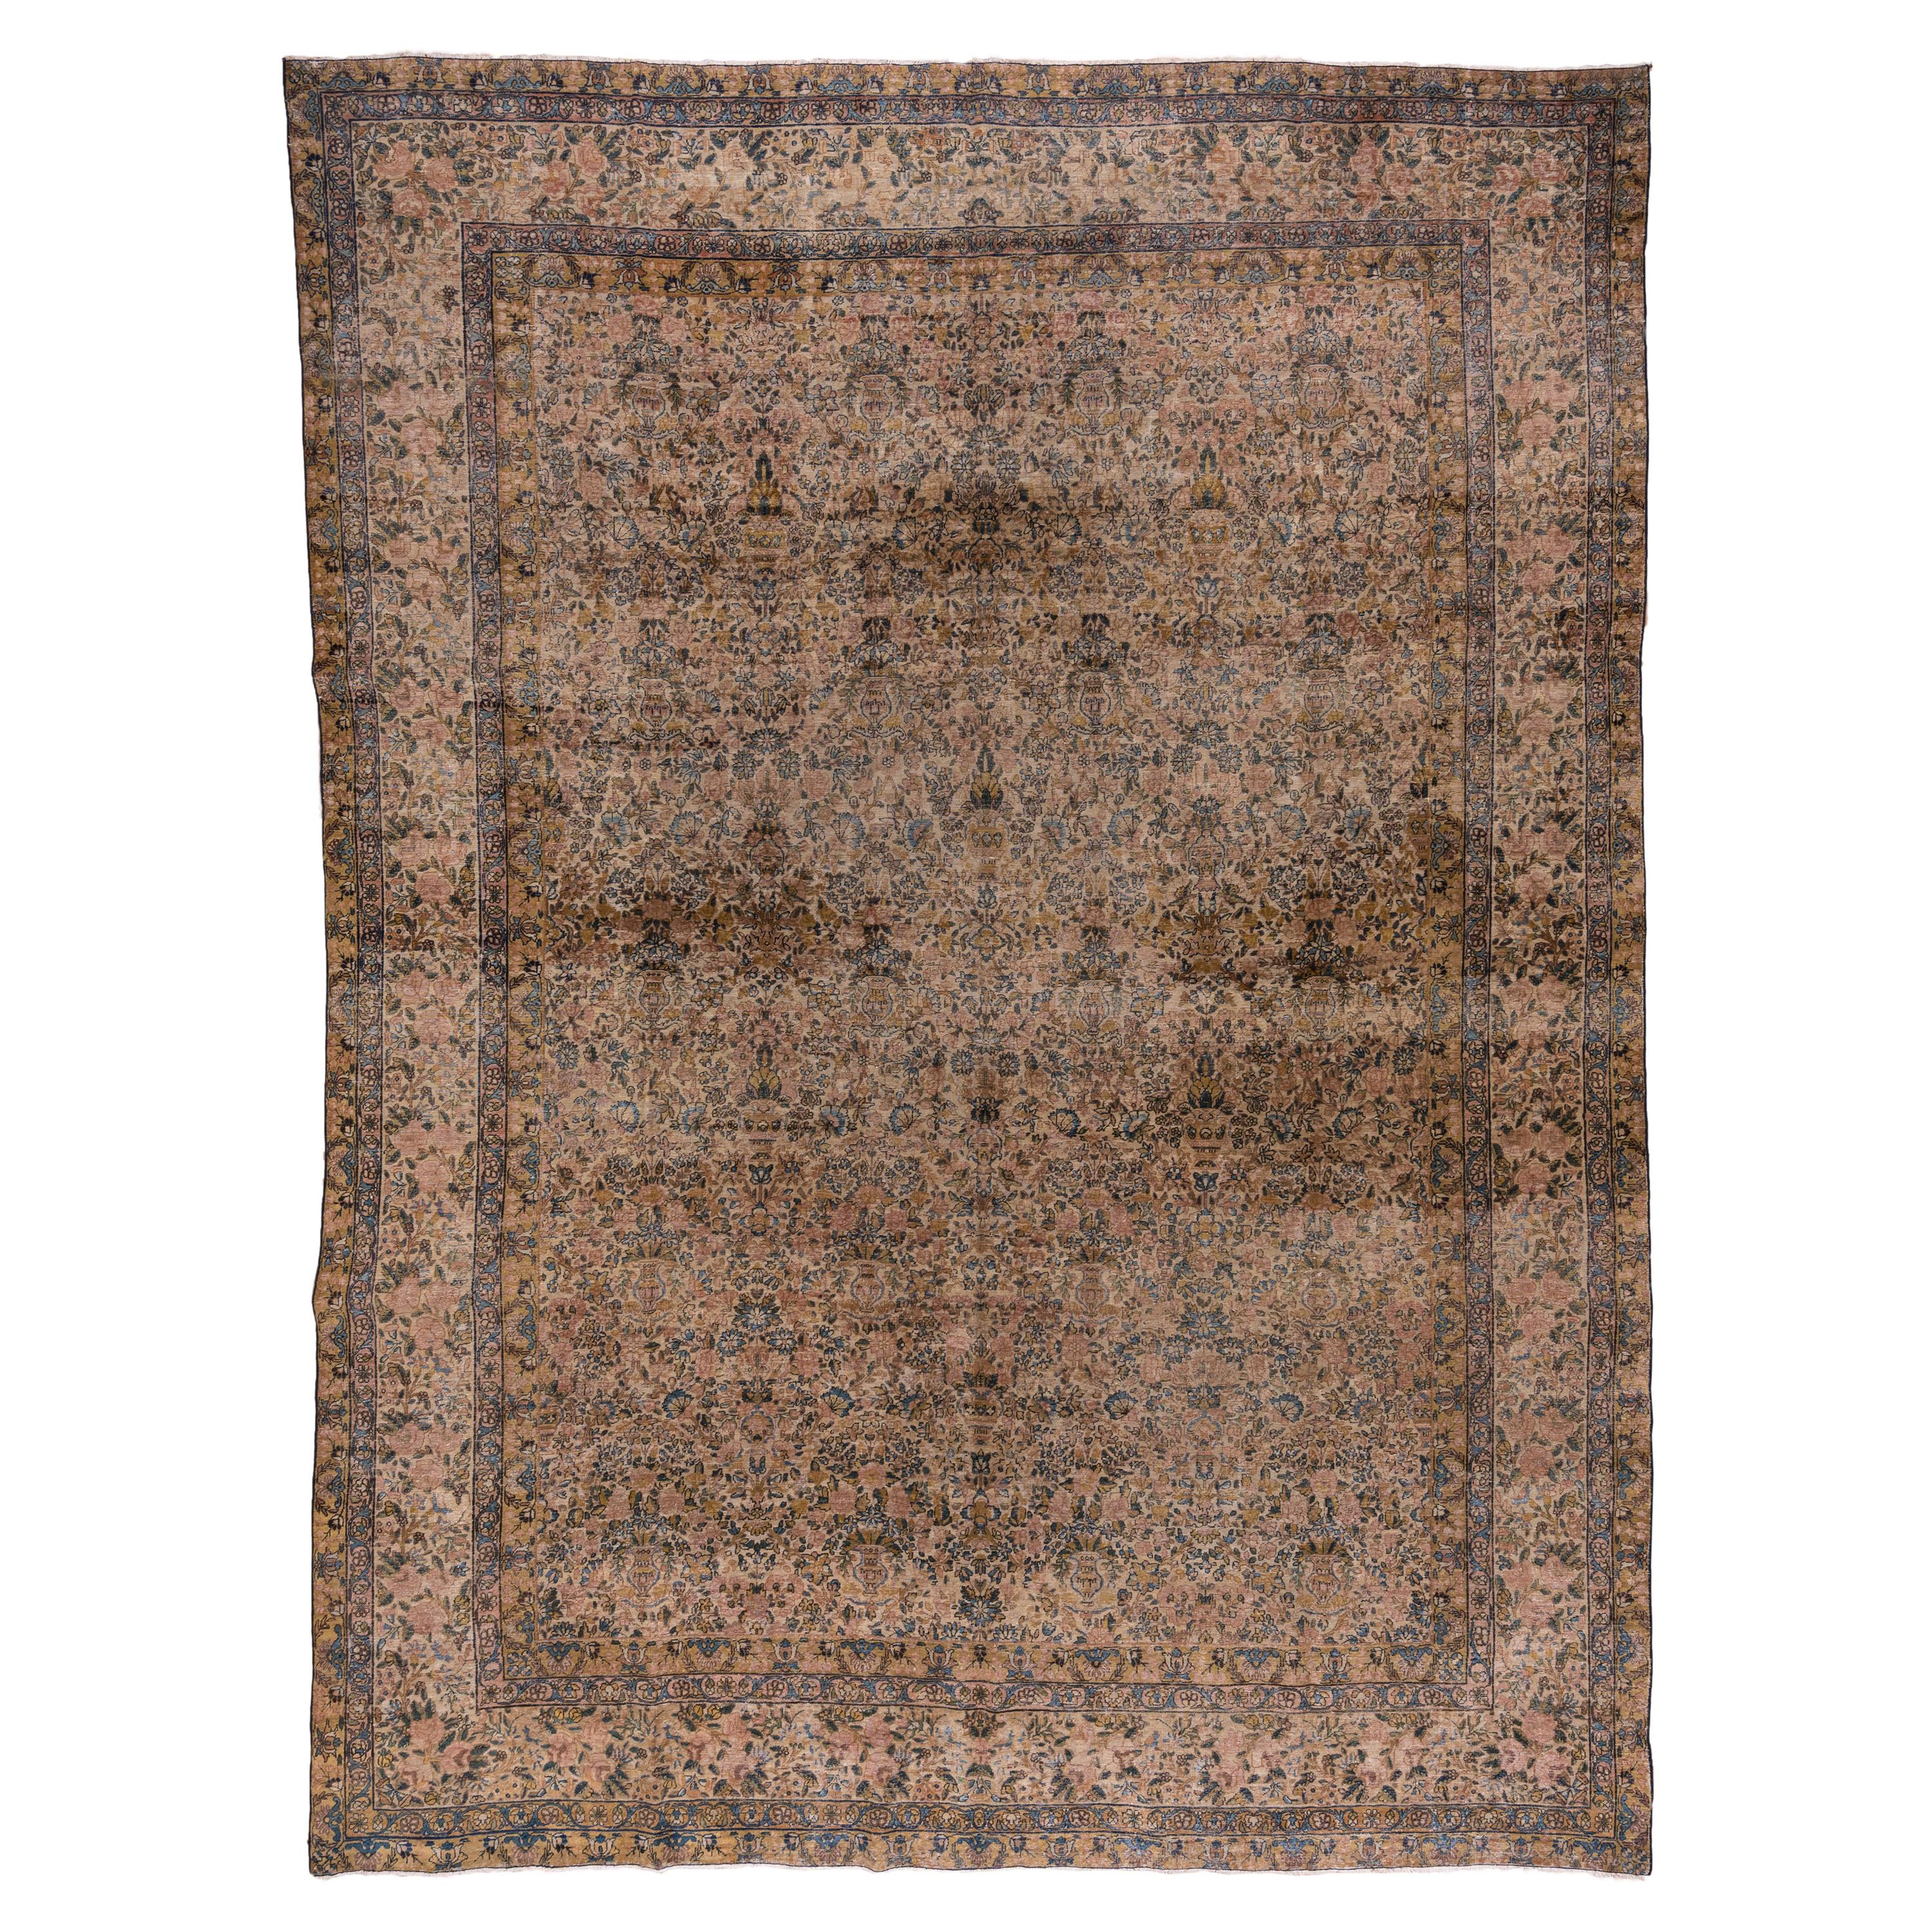 Fine tapis persan ancien de Kerman, vers les années 1920